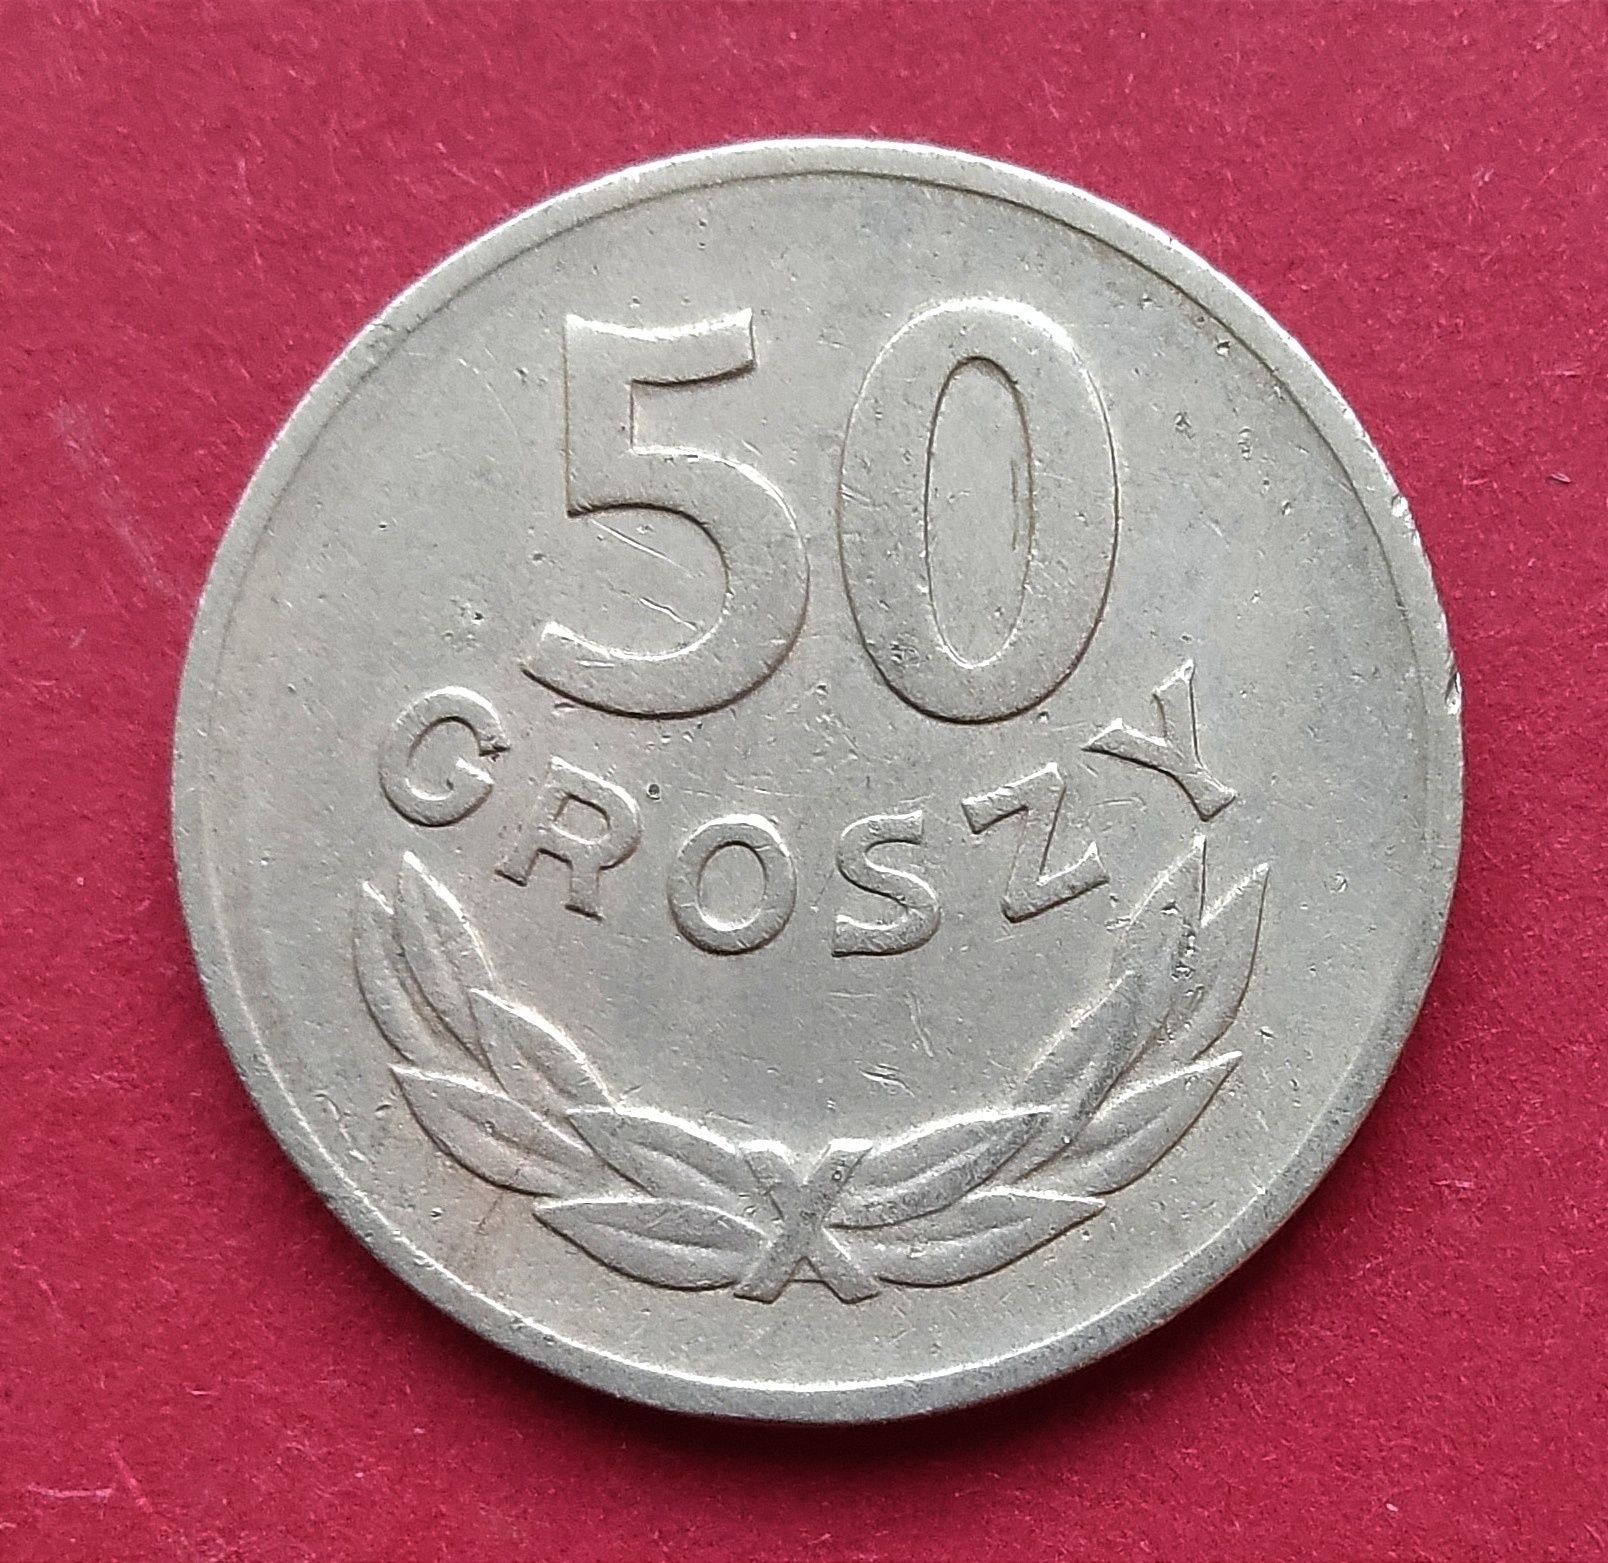 Moneta 50 groszy 1949 miedzionikiel